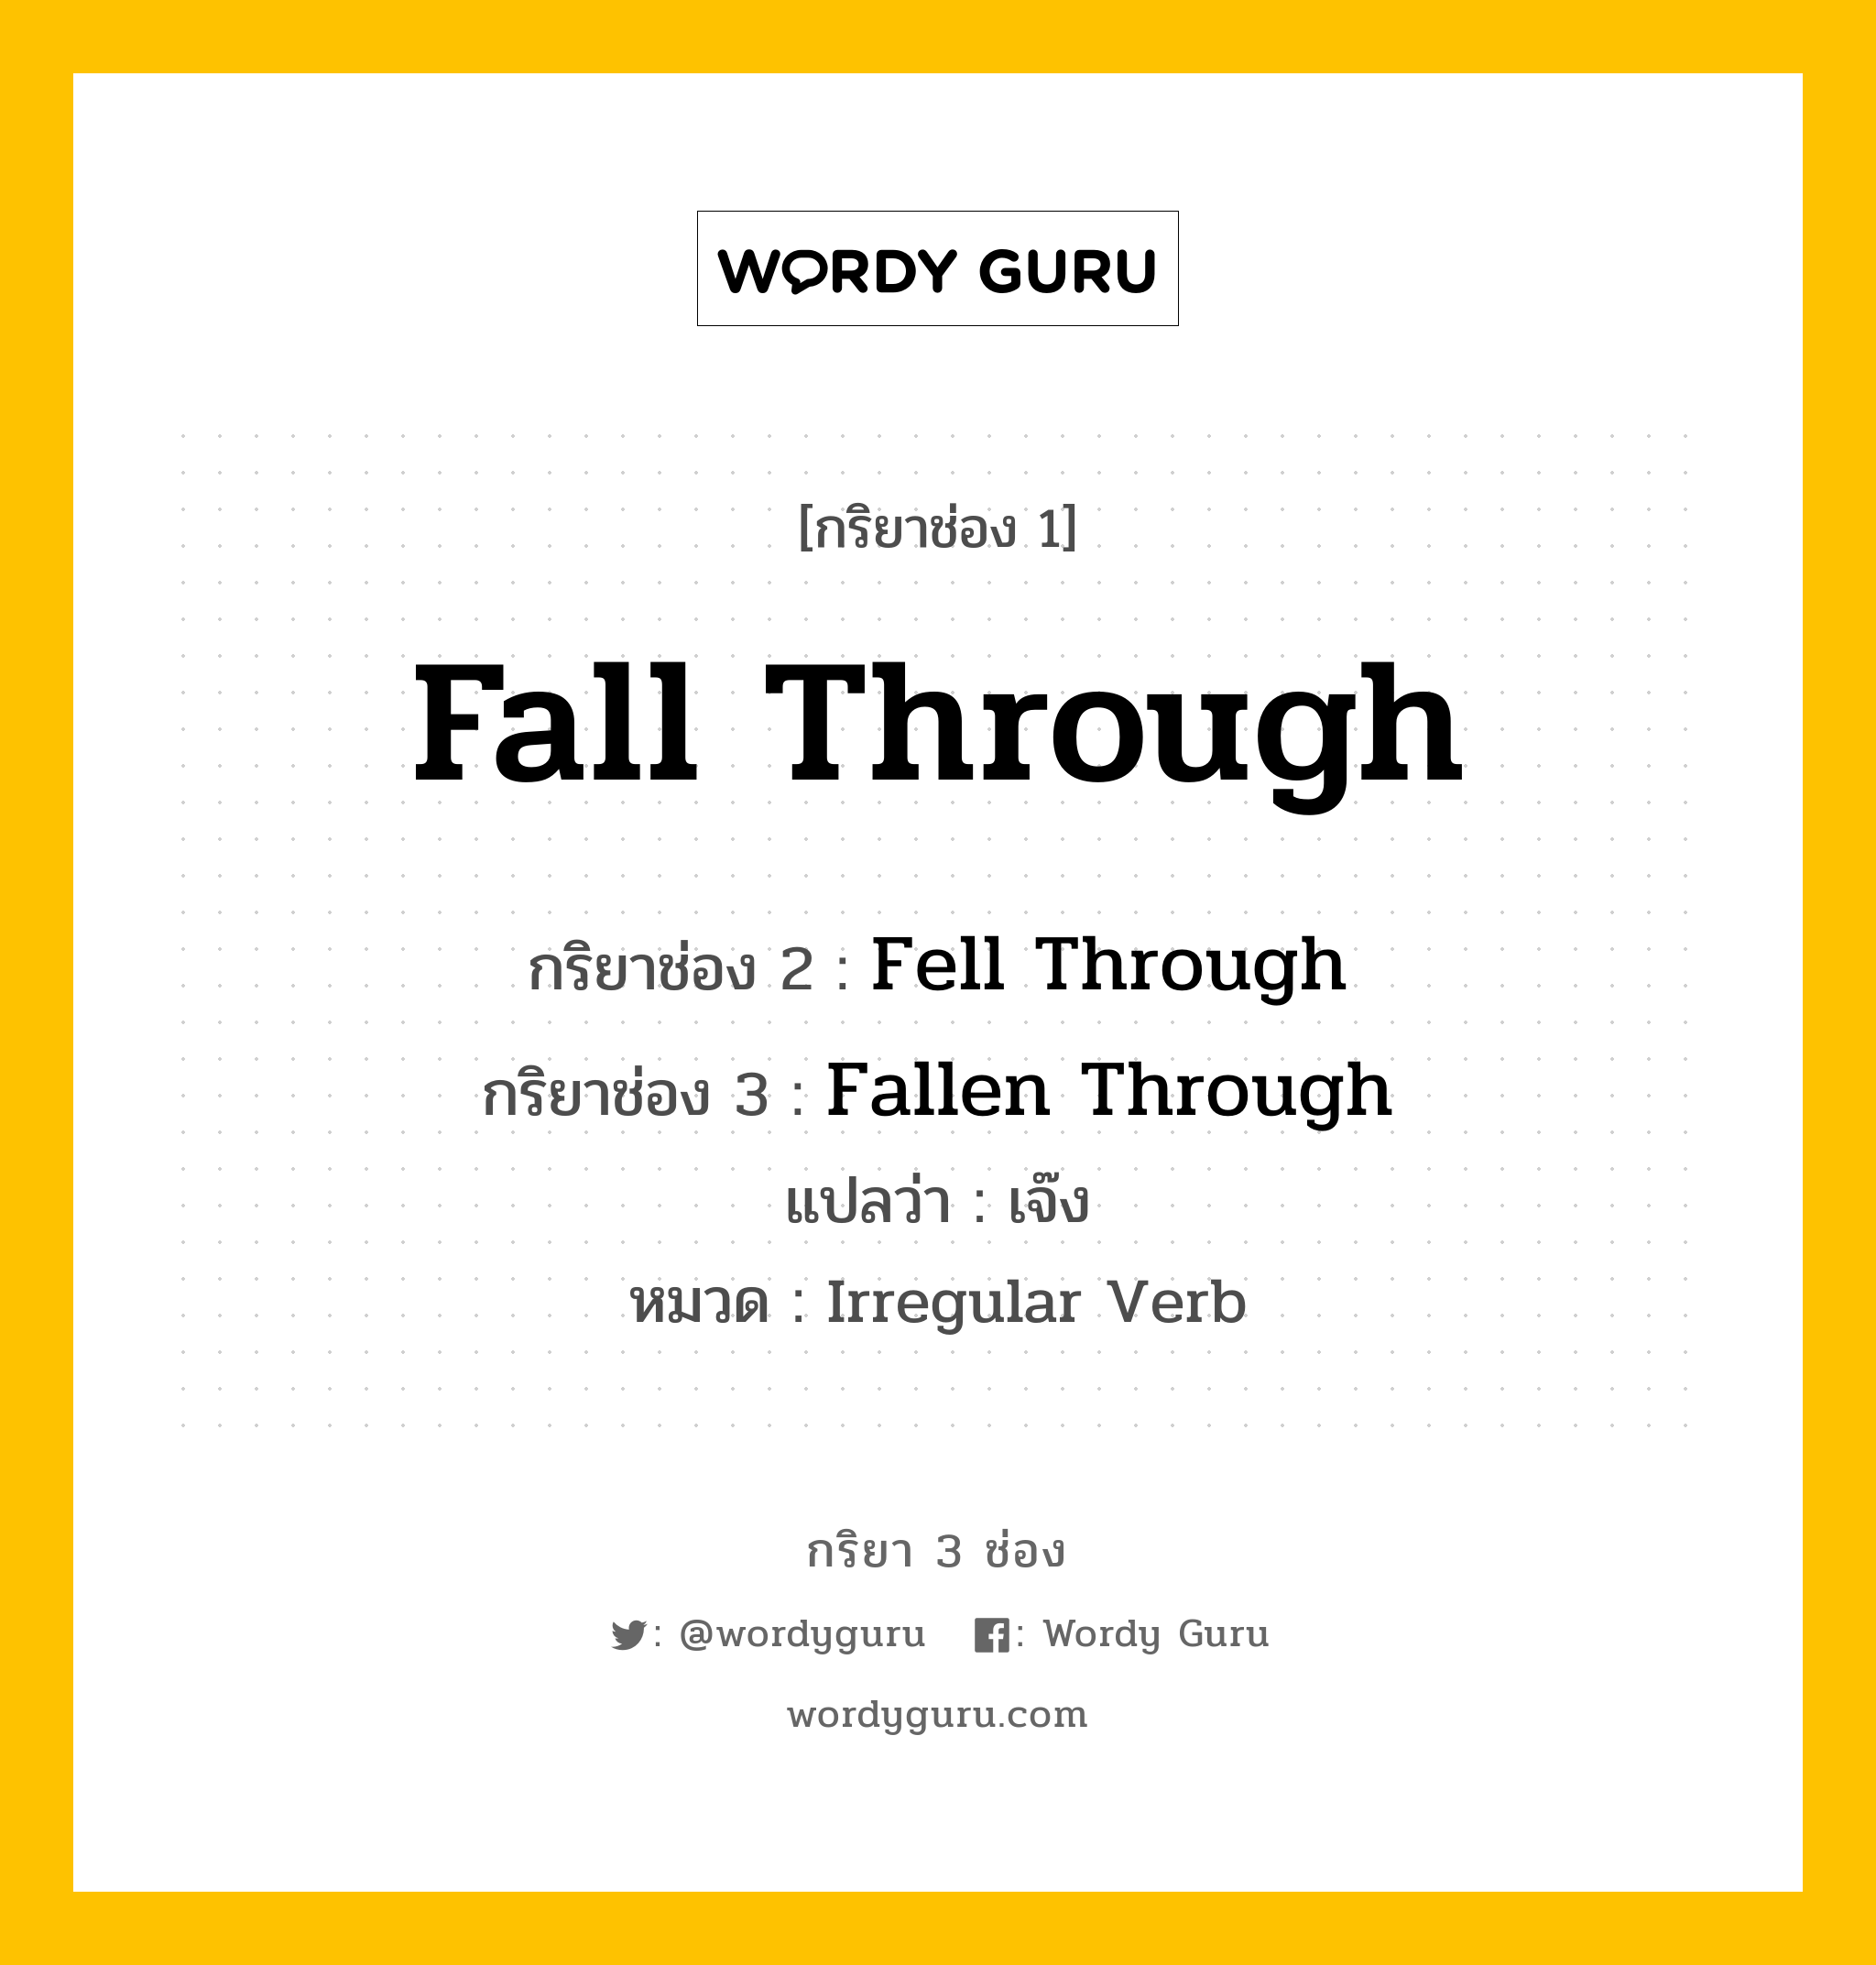 กริยา 3 ช่อง: Fall Through ช่อง 2 Fall Through ช่อง 3 คืออะไร, กริยาช่อง 1 Fall Through กริยาช่อง 2 Fell Through กริยาช่อง 3 Fallen Through แปลว่า เจ๊ง หมวด Irregular Verb หมวด Irregular Verb